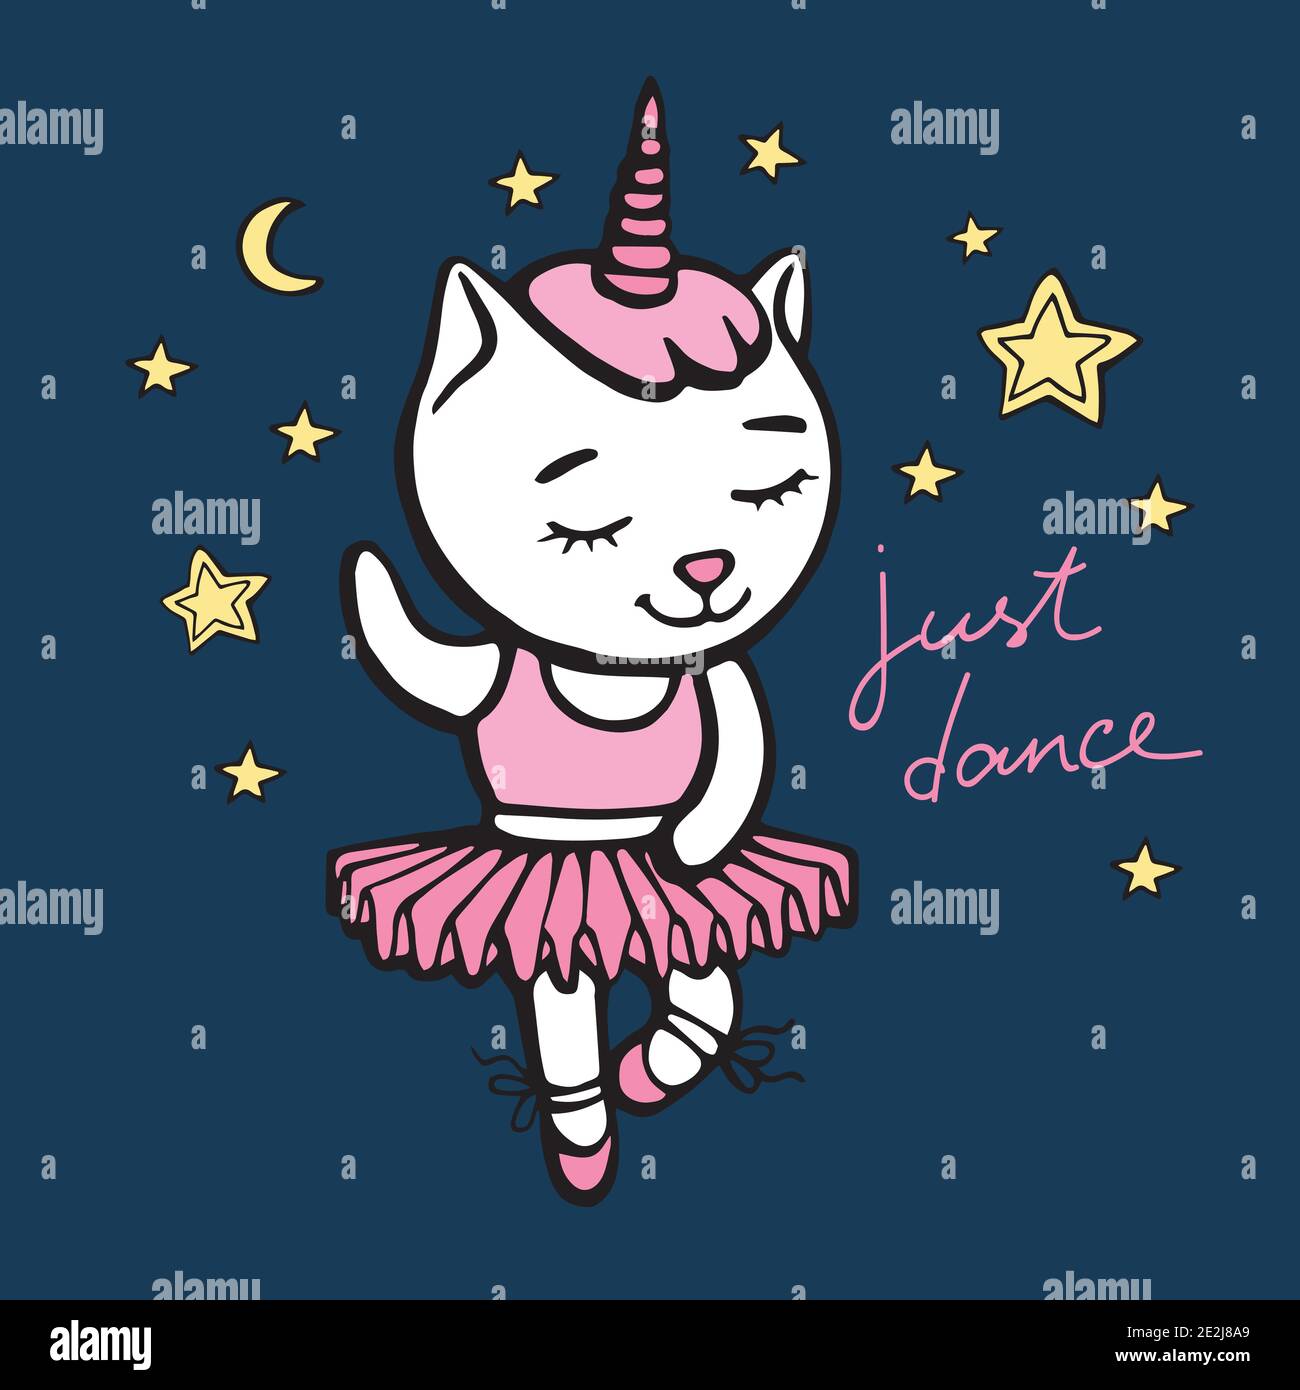 Niedliche weiße tanzende Katze Einhorn mit Horn auf dunkelblauem Hintergrund mit Herzen und Sternen. Handgezeichnete Vektor-Illustration für T-Shirt-Druck und Stock Vektor